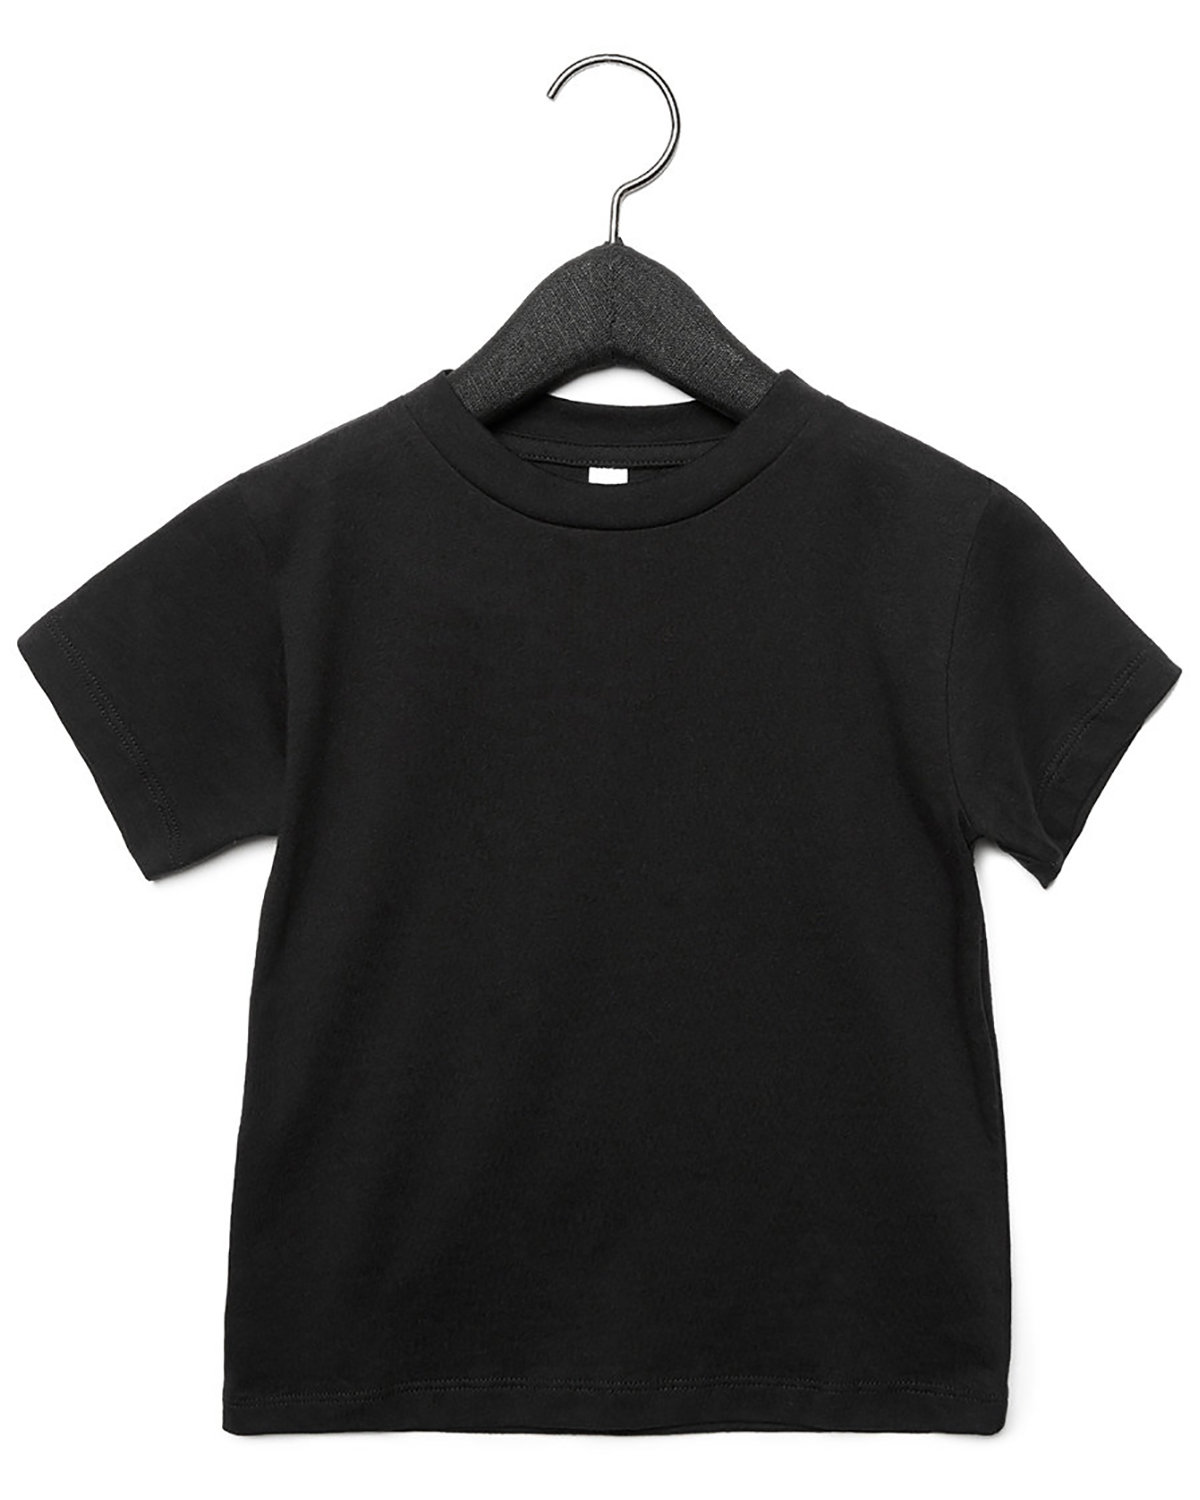 ShirtSpace 3001T + T-Shirt | Canvas Jersey Bella Toddler Short-Sleeve |